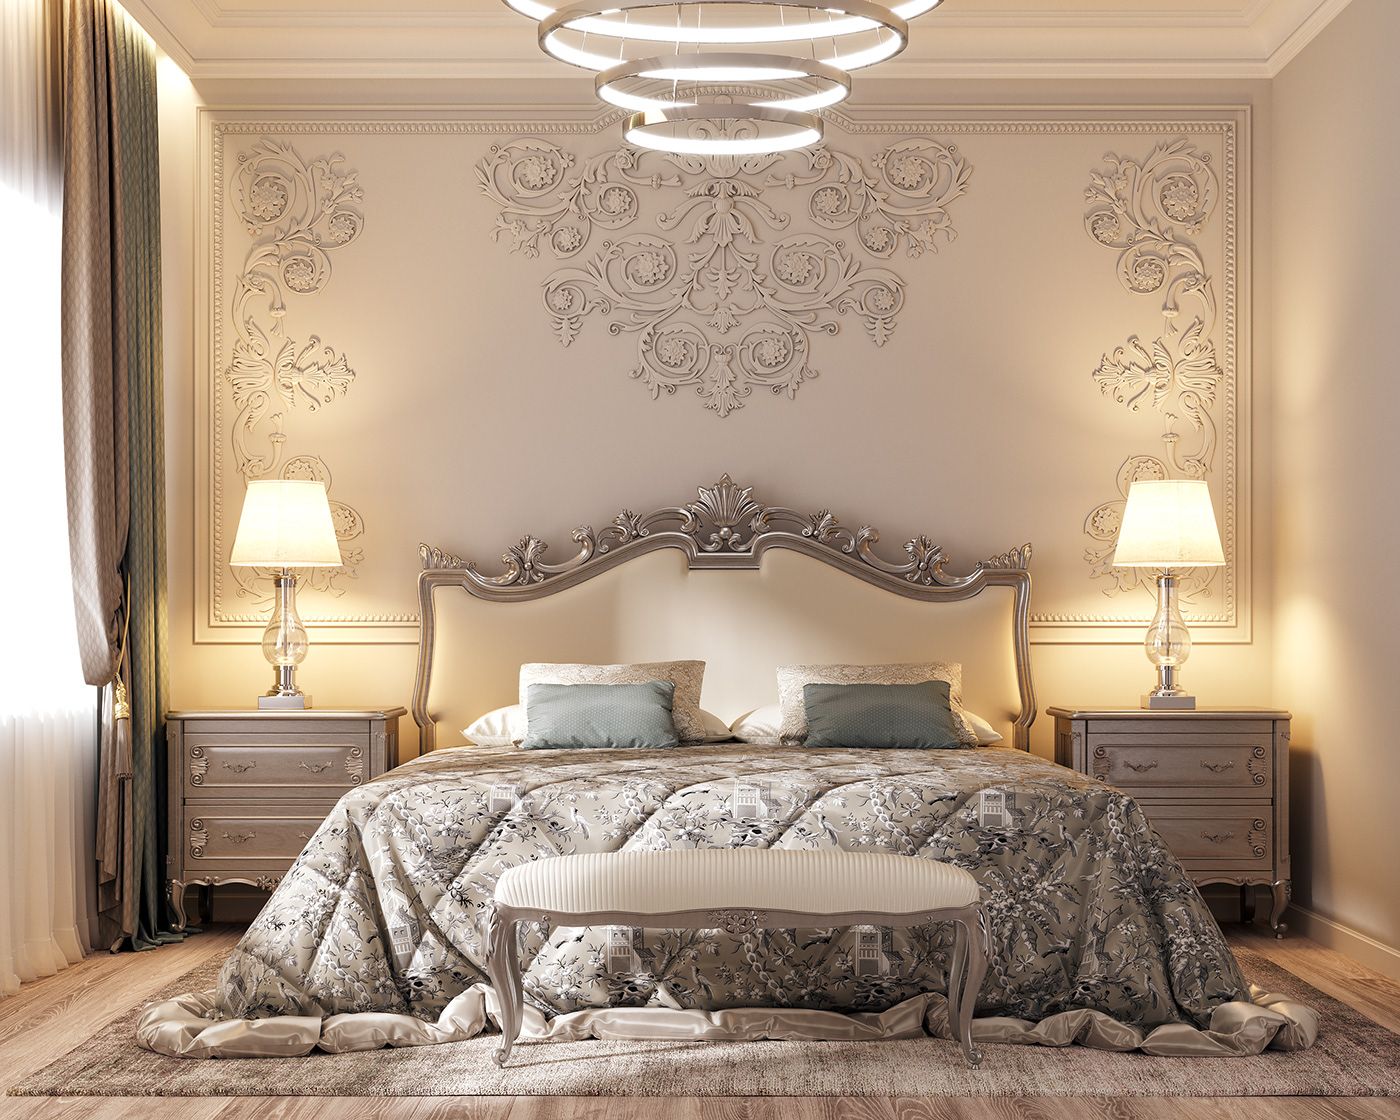 Việc sử dụng các chất liệu tự nhiên, cao cấp cho phòng ngủ sẽ làm tôn lên vẻ đẹp sang trọng của phong cách cổ điển